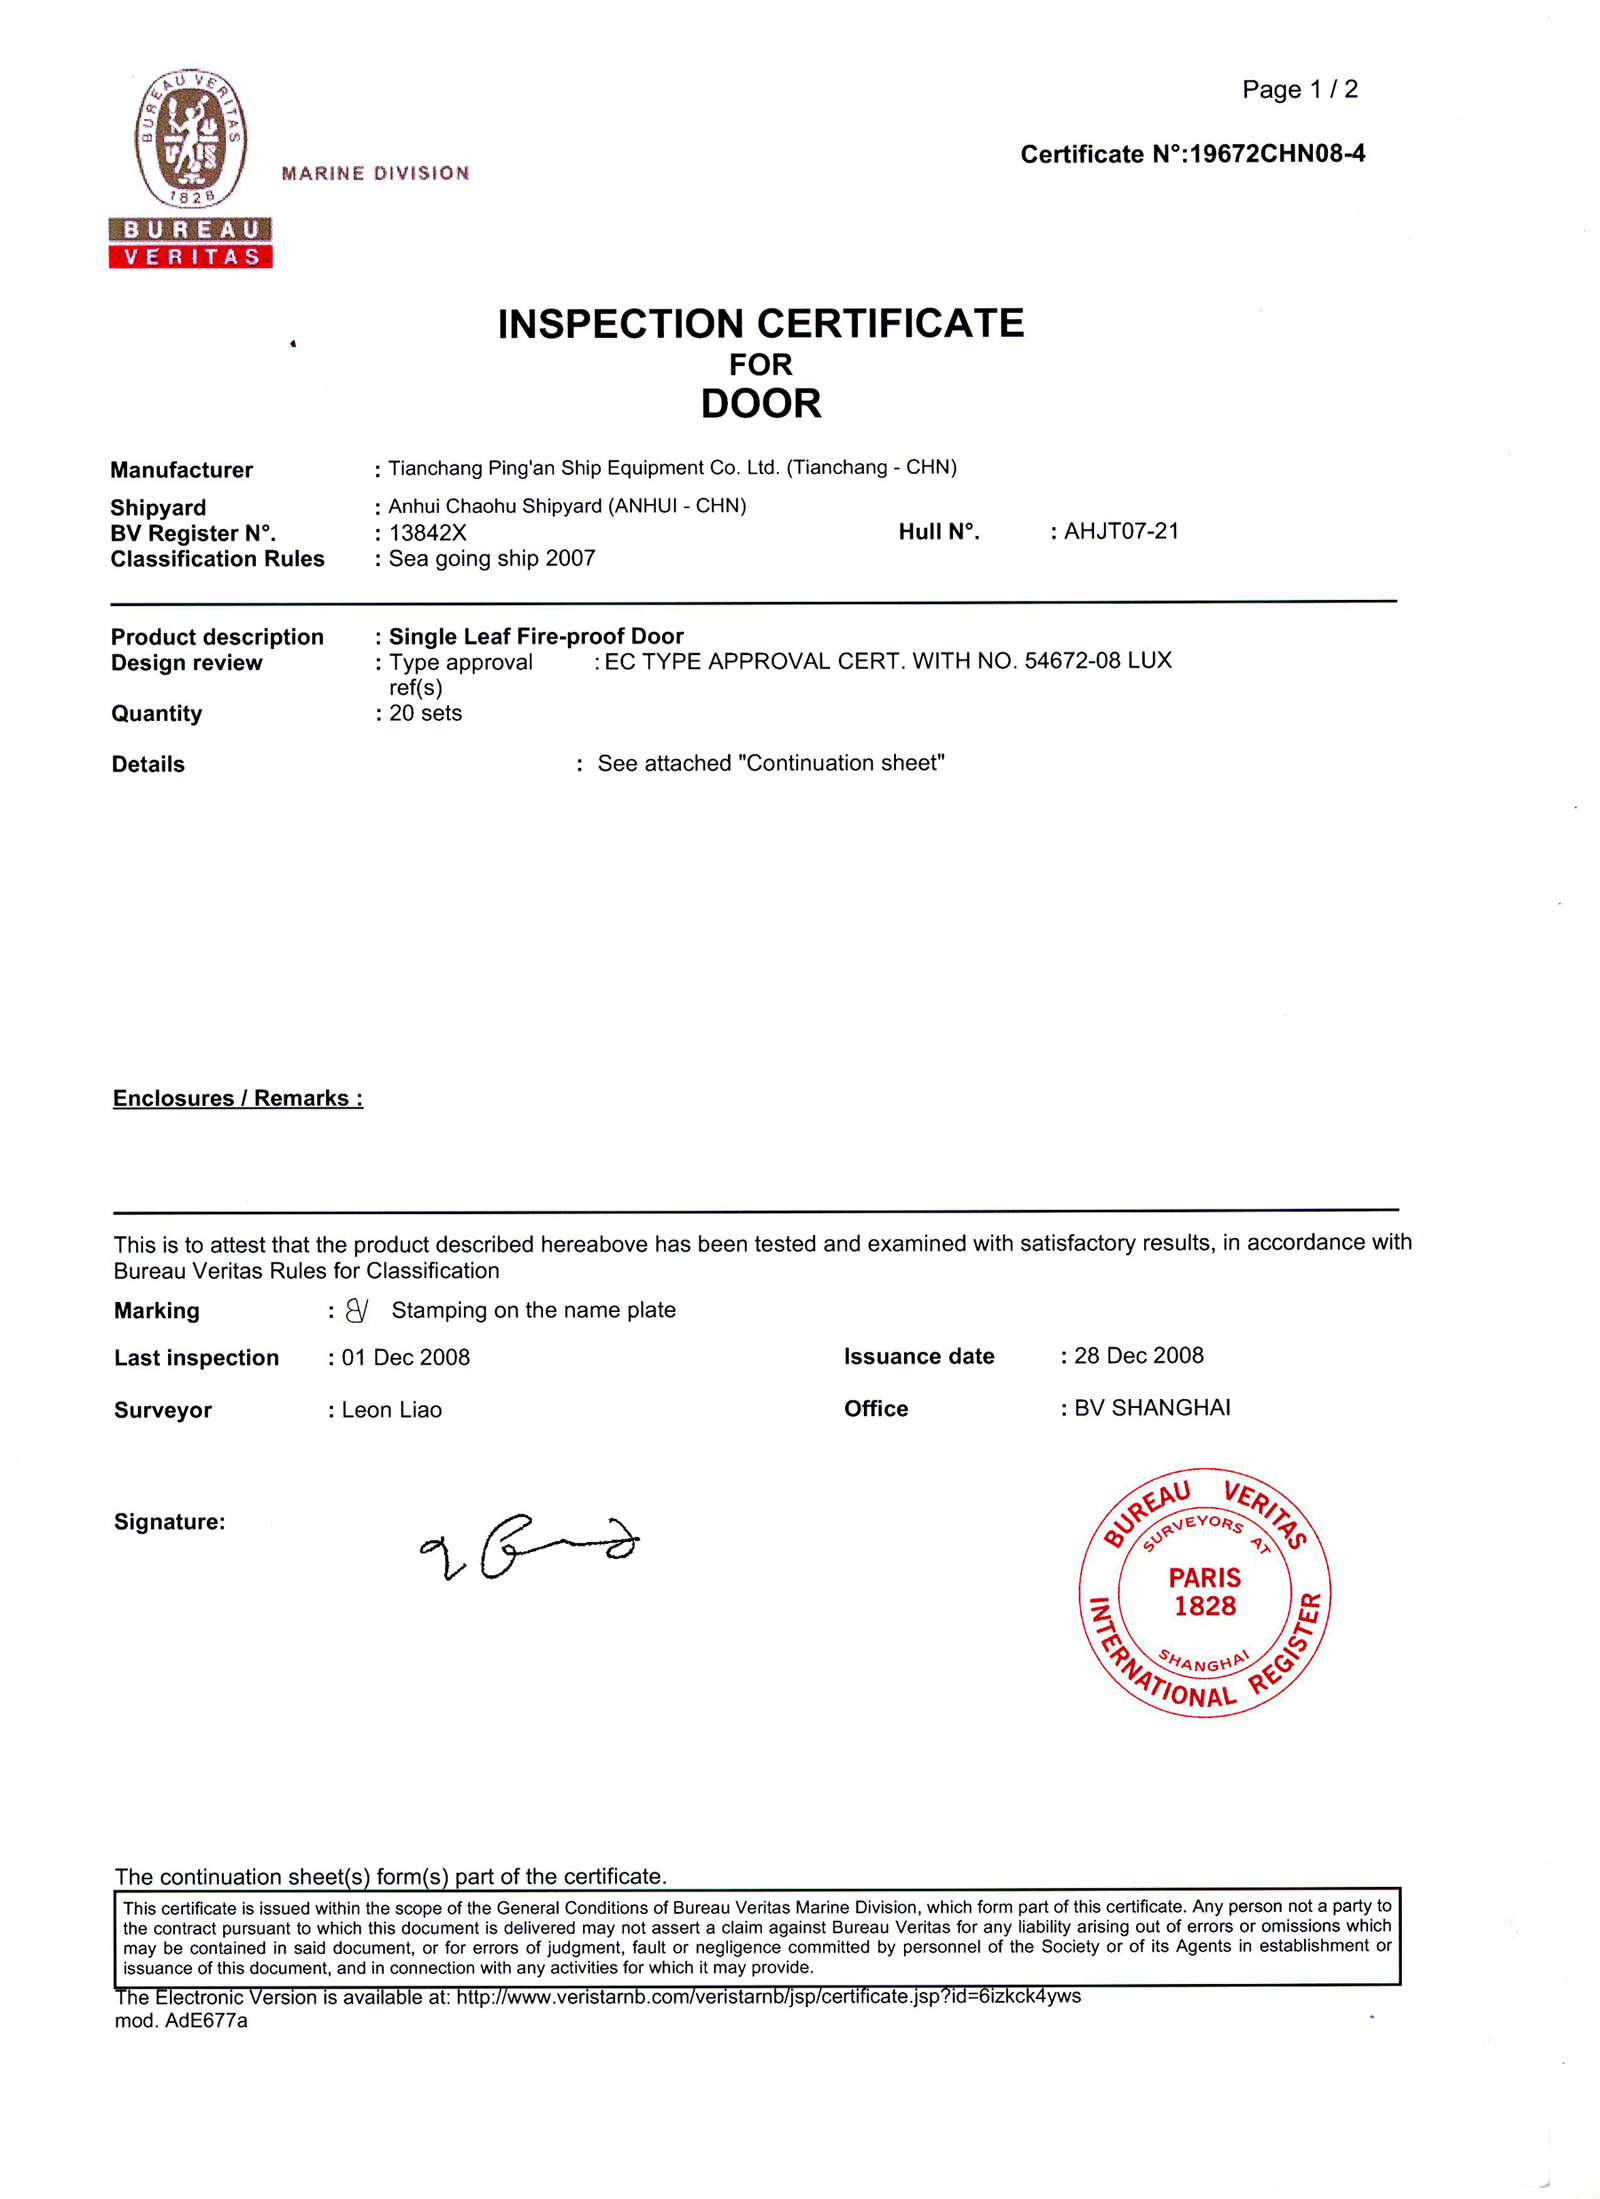 BV Inspection Certificate of Door